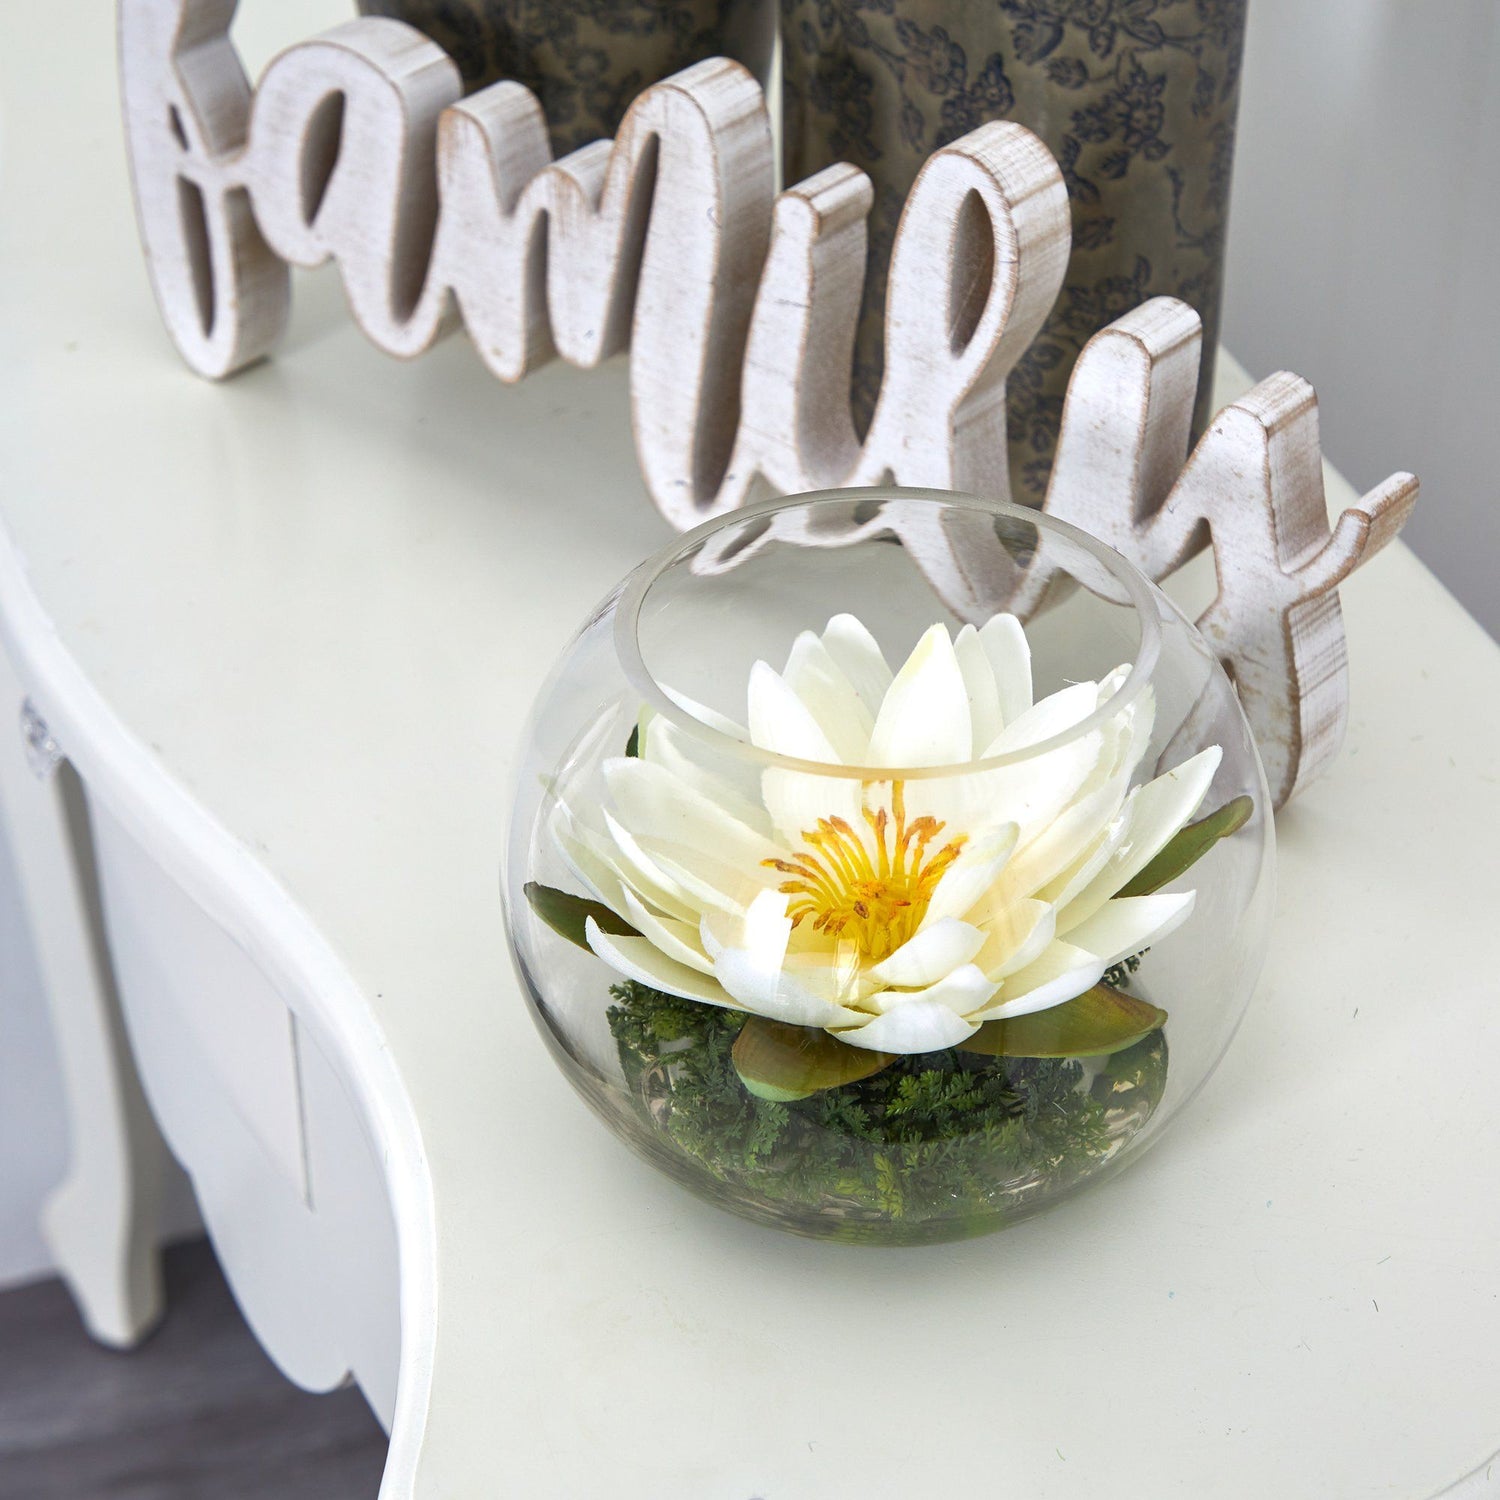 8” Lotus Artificial Arrangement in Glass Vase